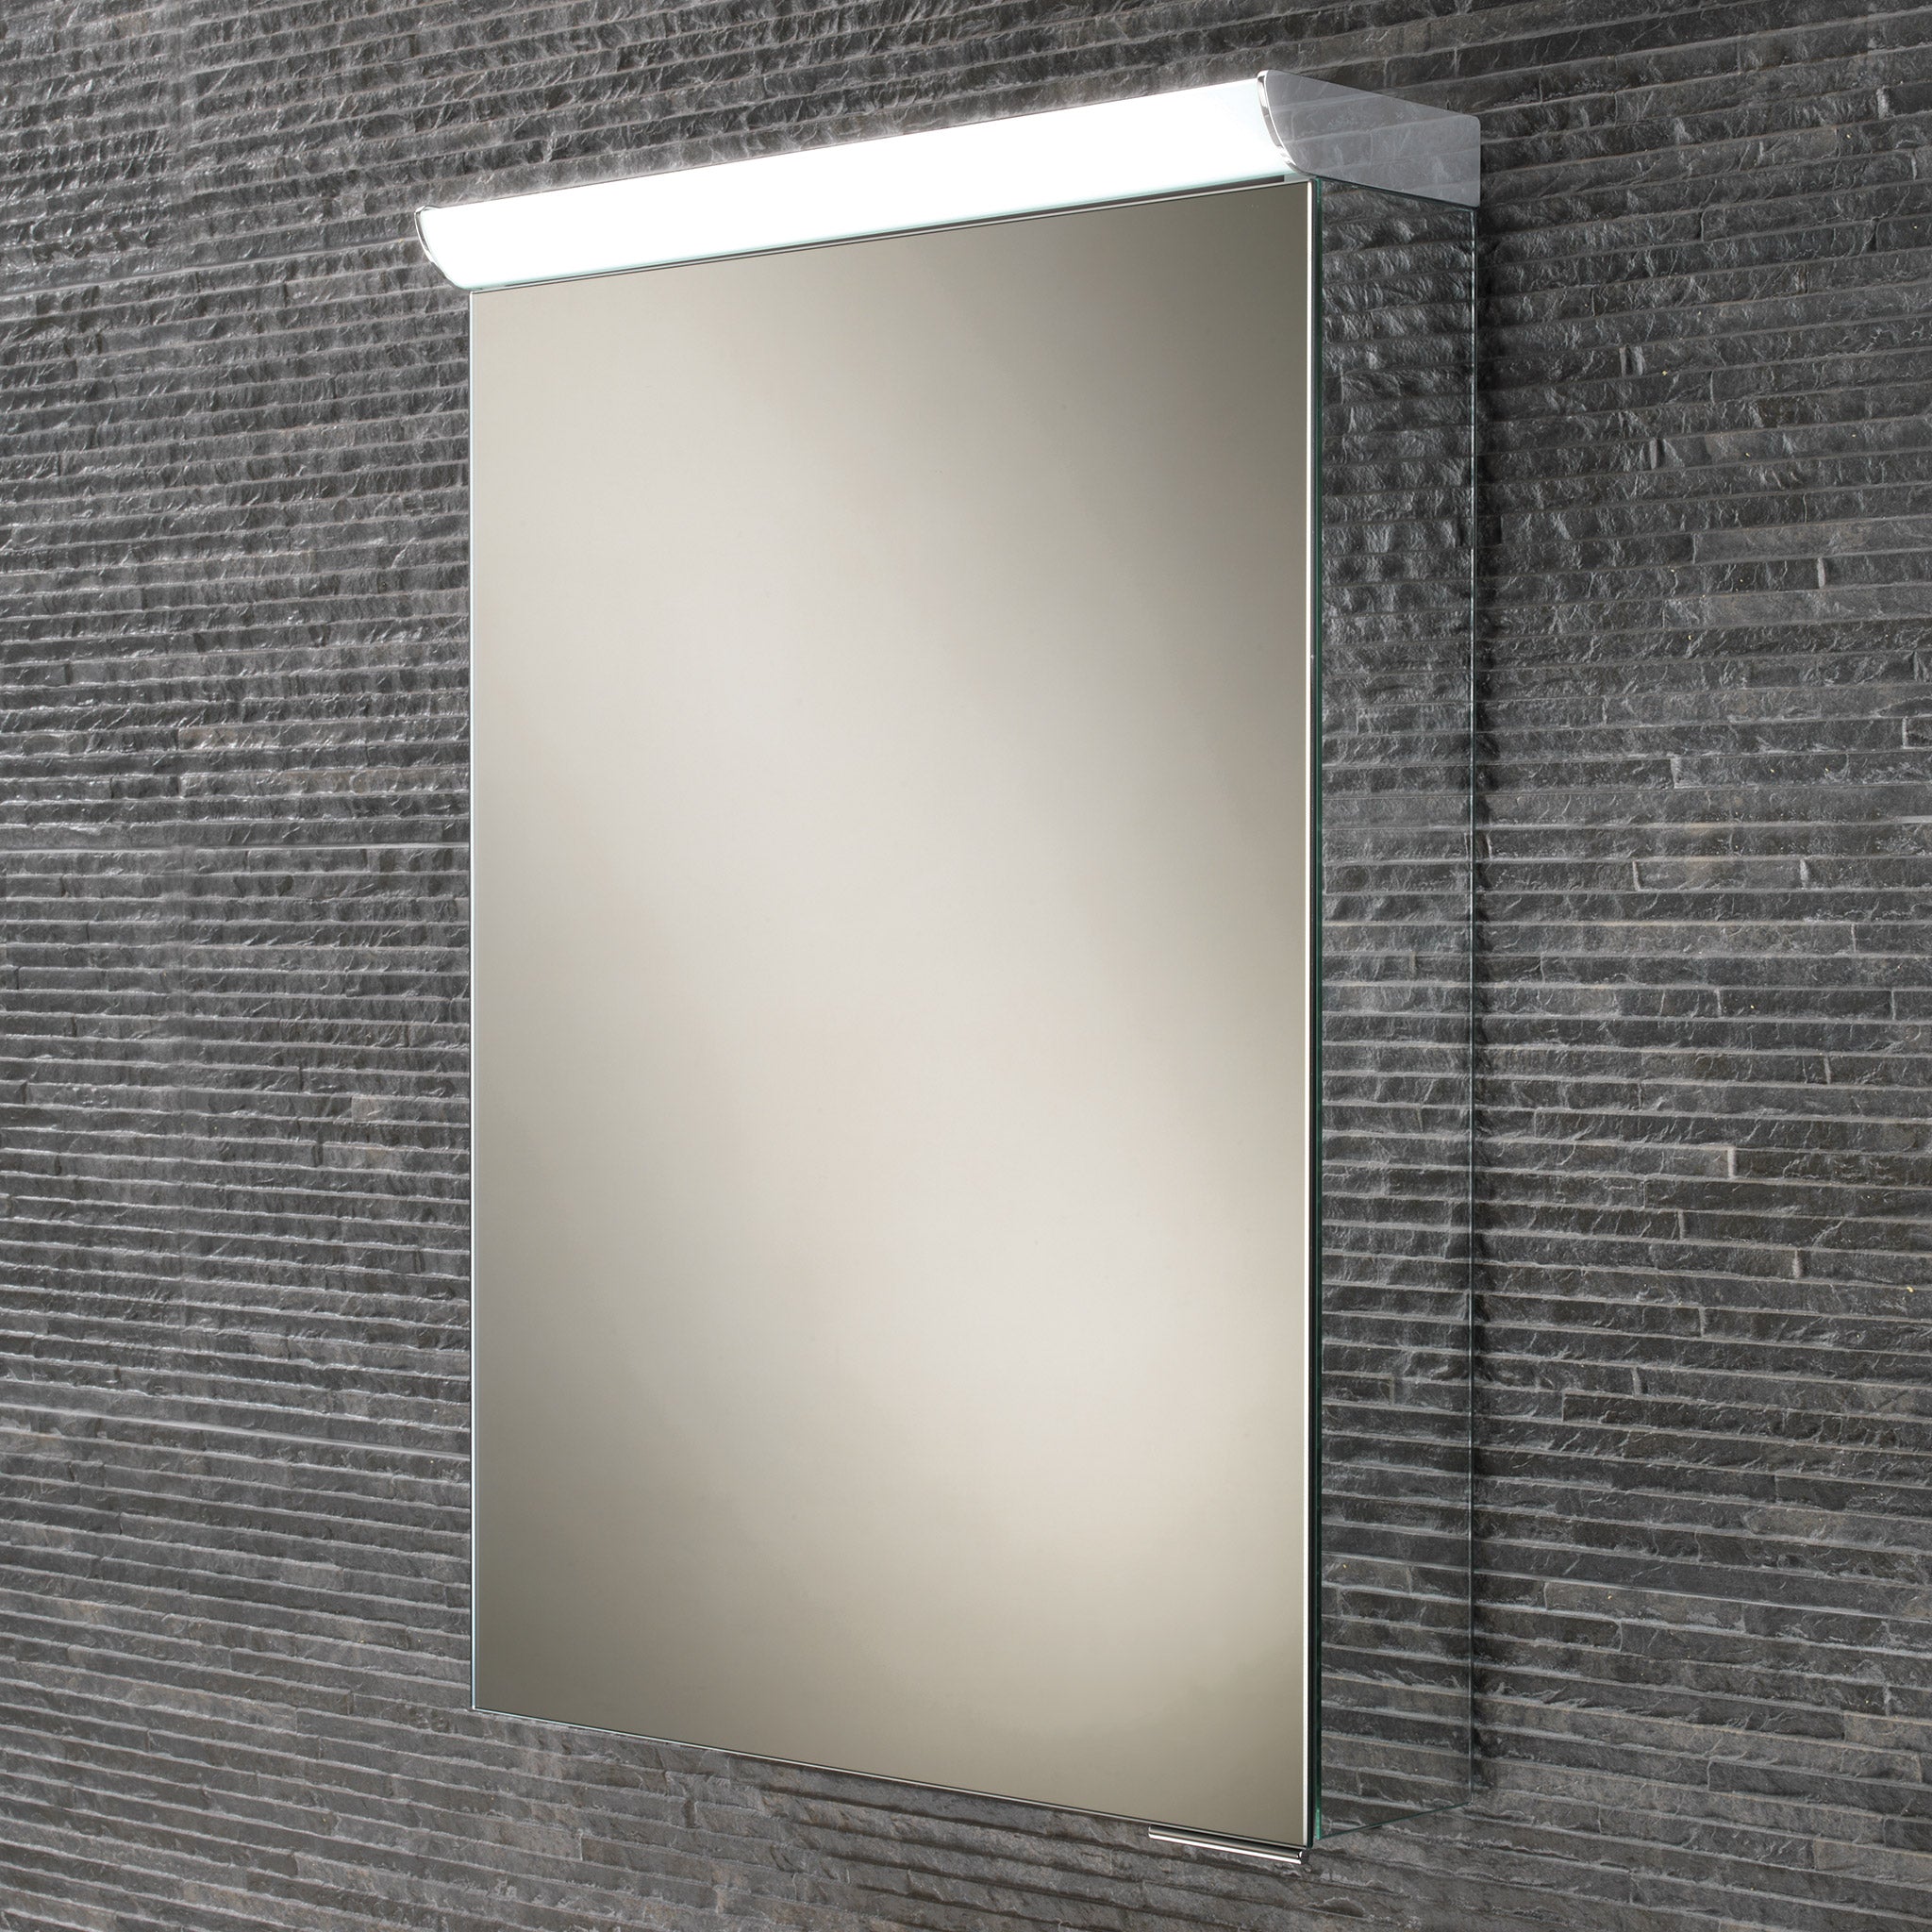 HiB Flux LED Aluminium Mirror Cabinet 40 x 60cm